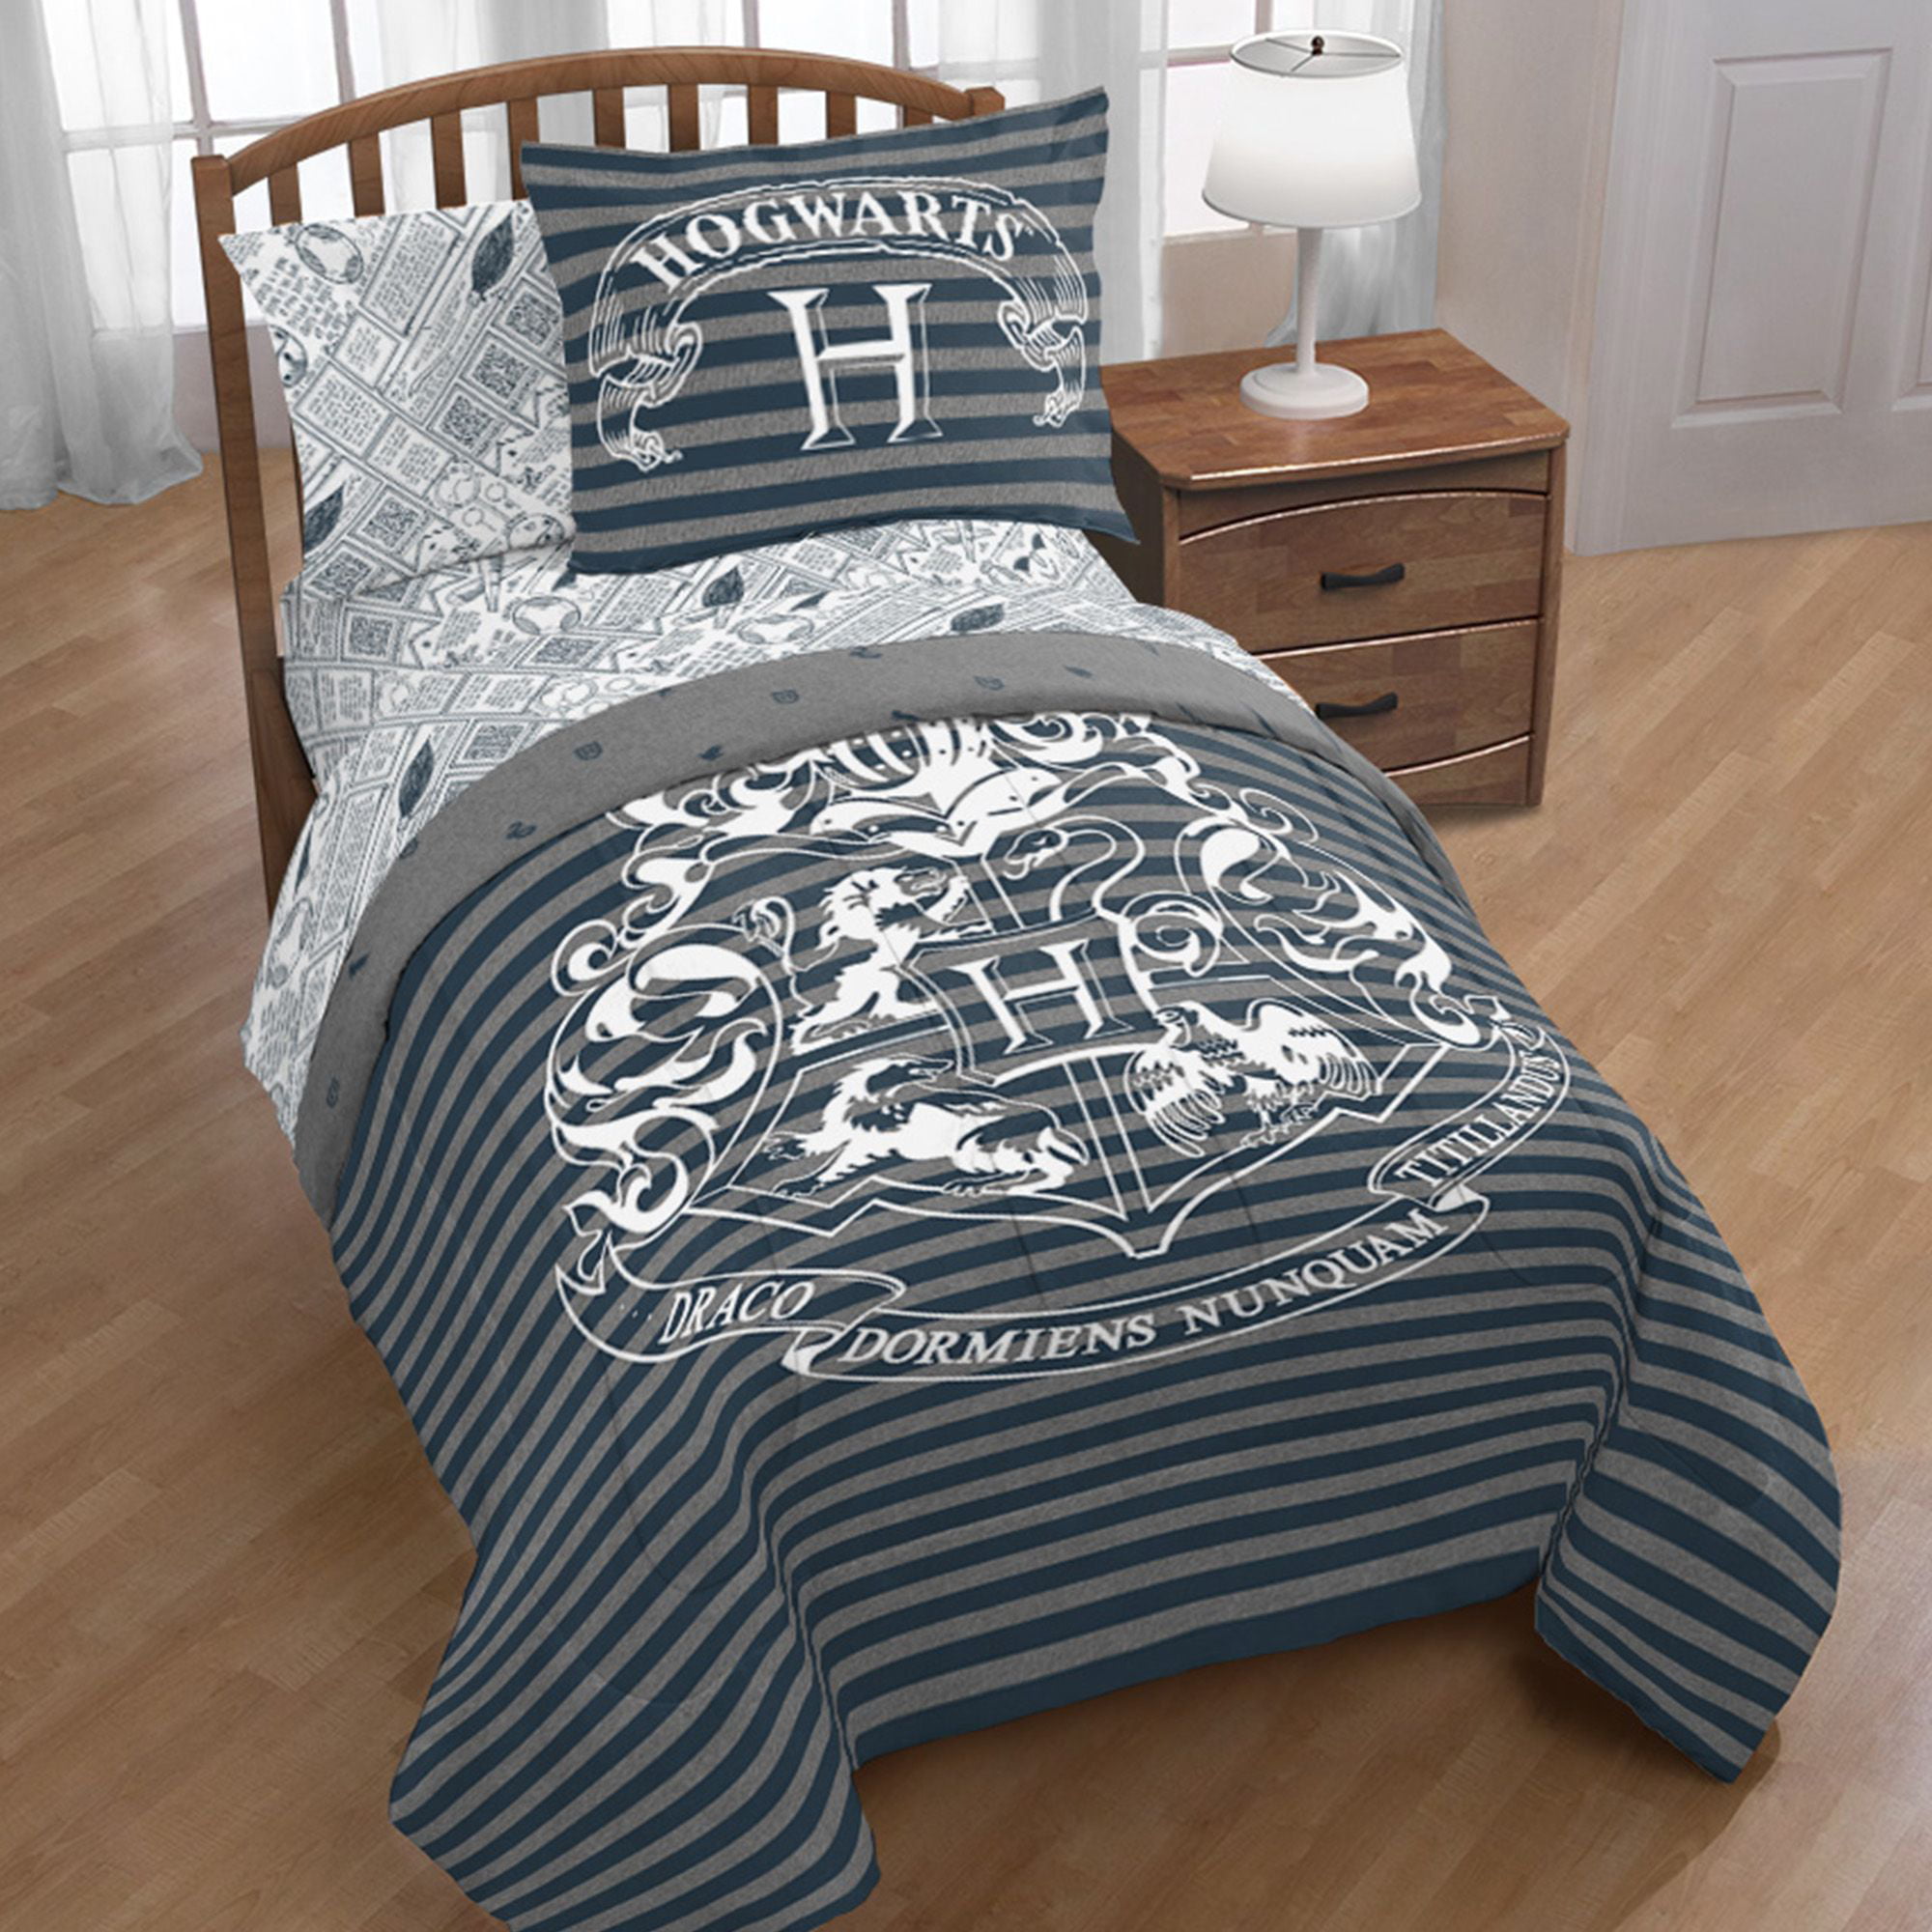 harry potter bed set Harry potter hogwarts crest gray & white bed in a bag bedding set w